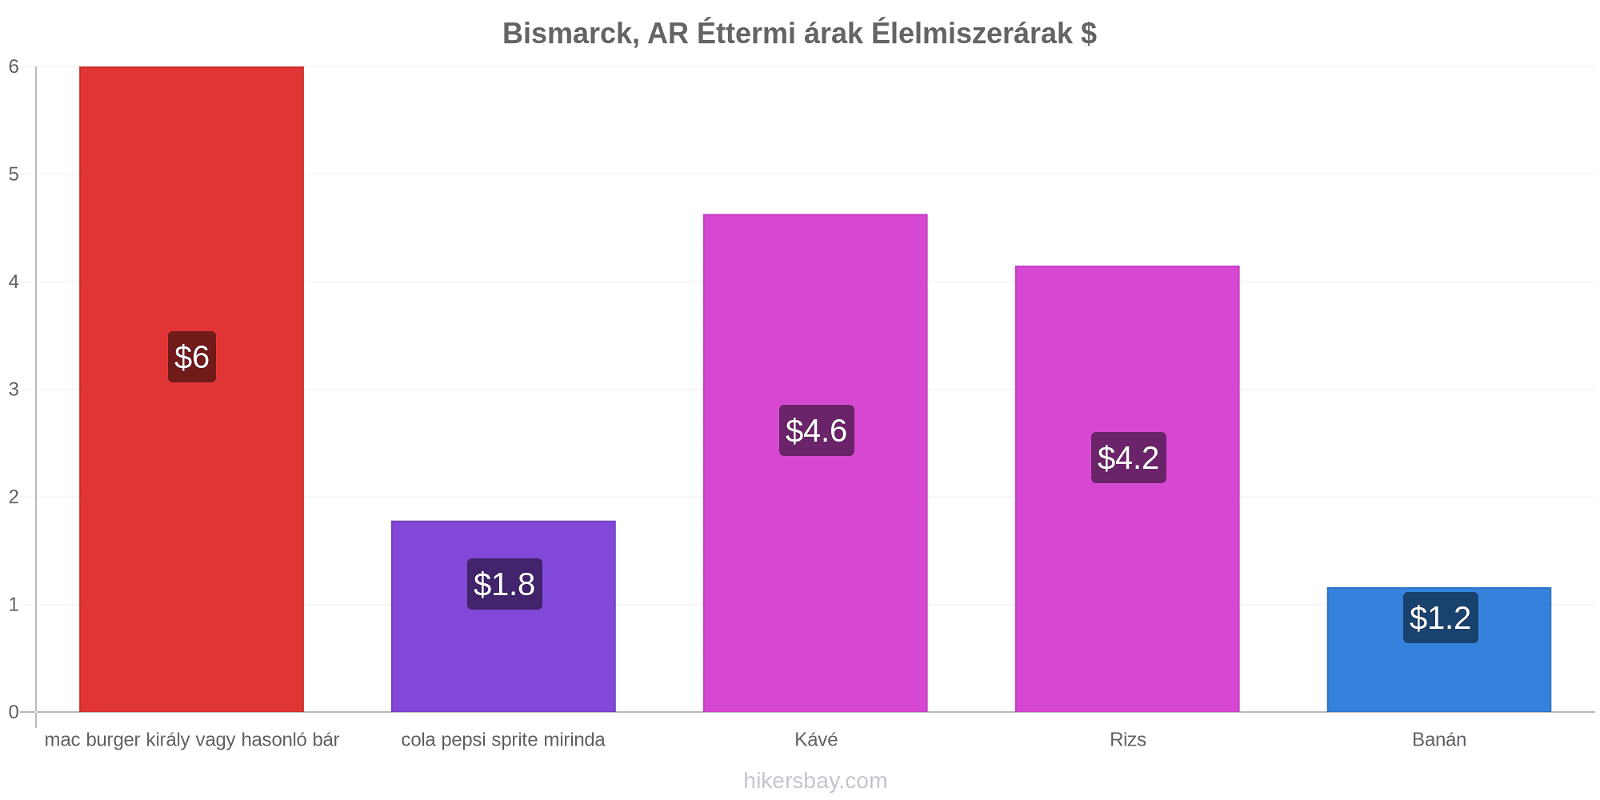 Bismarck, AR ár változások hikersbay.com